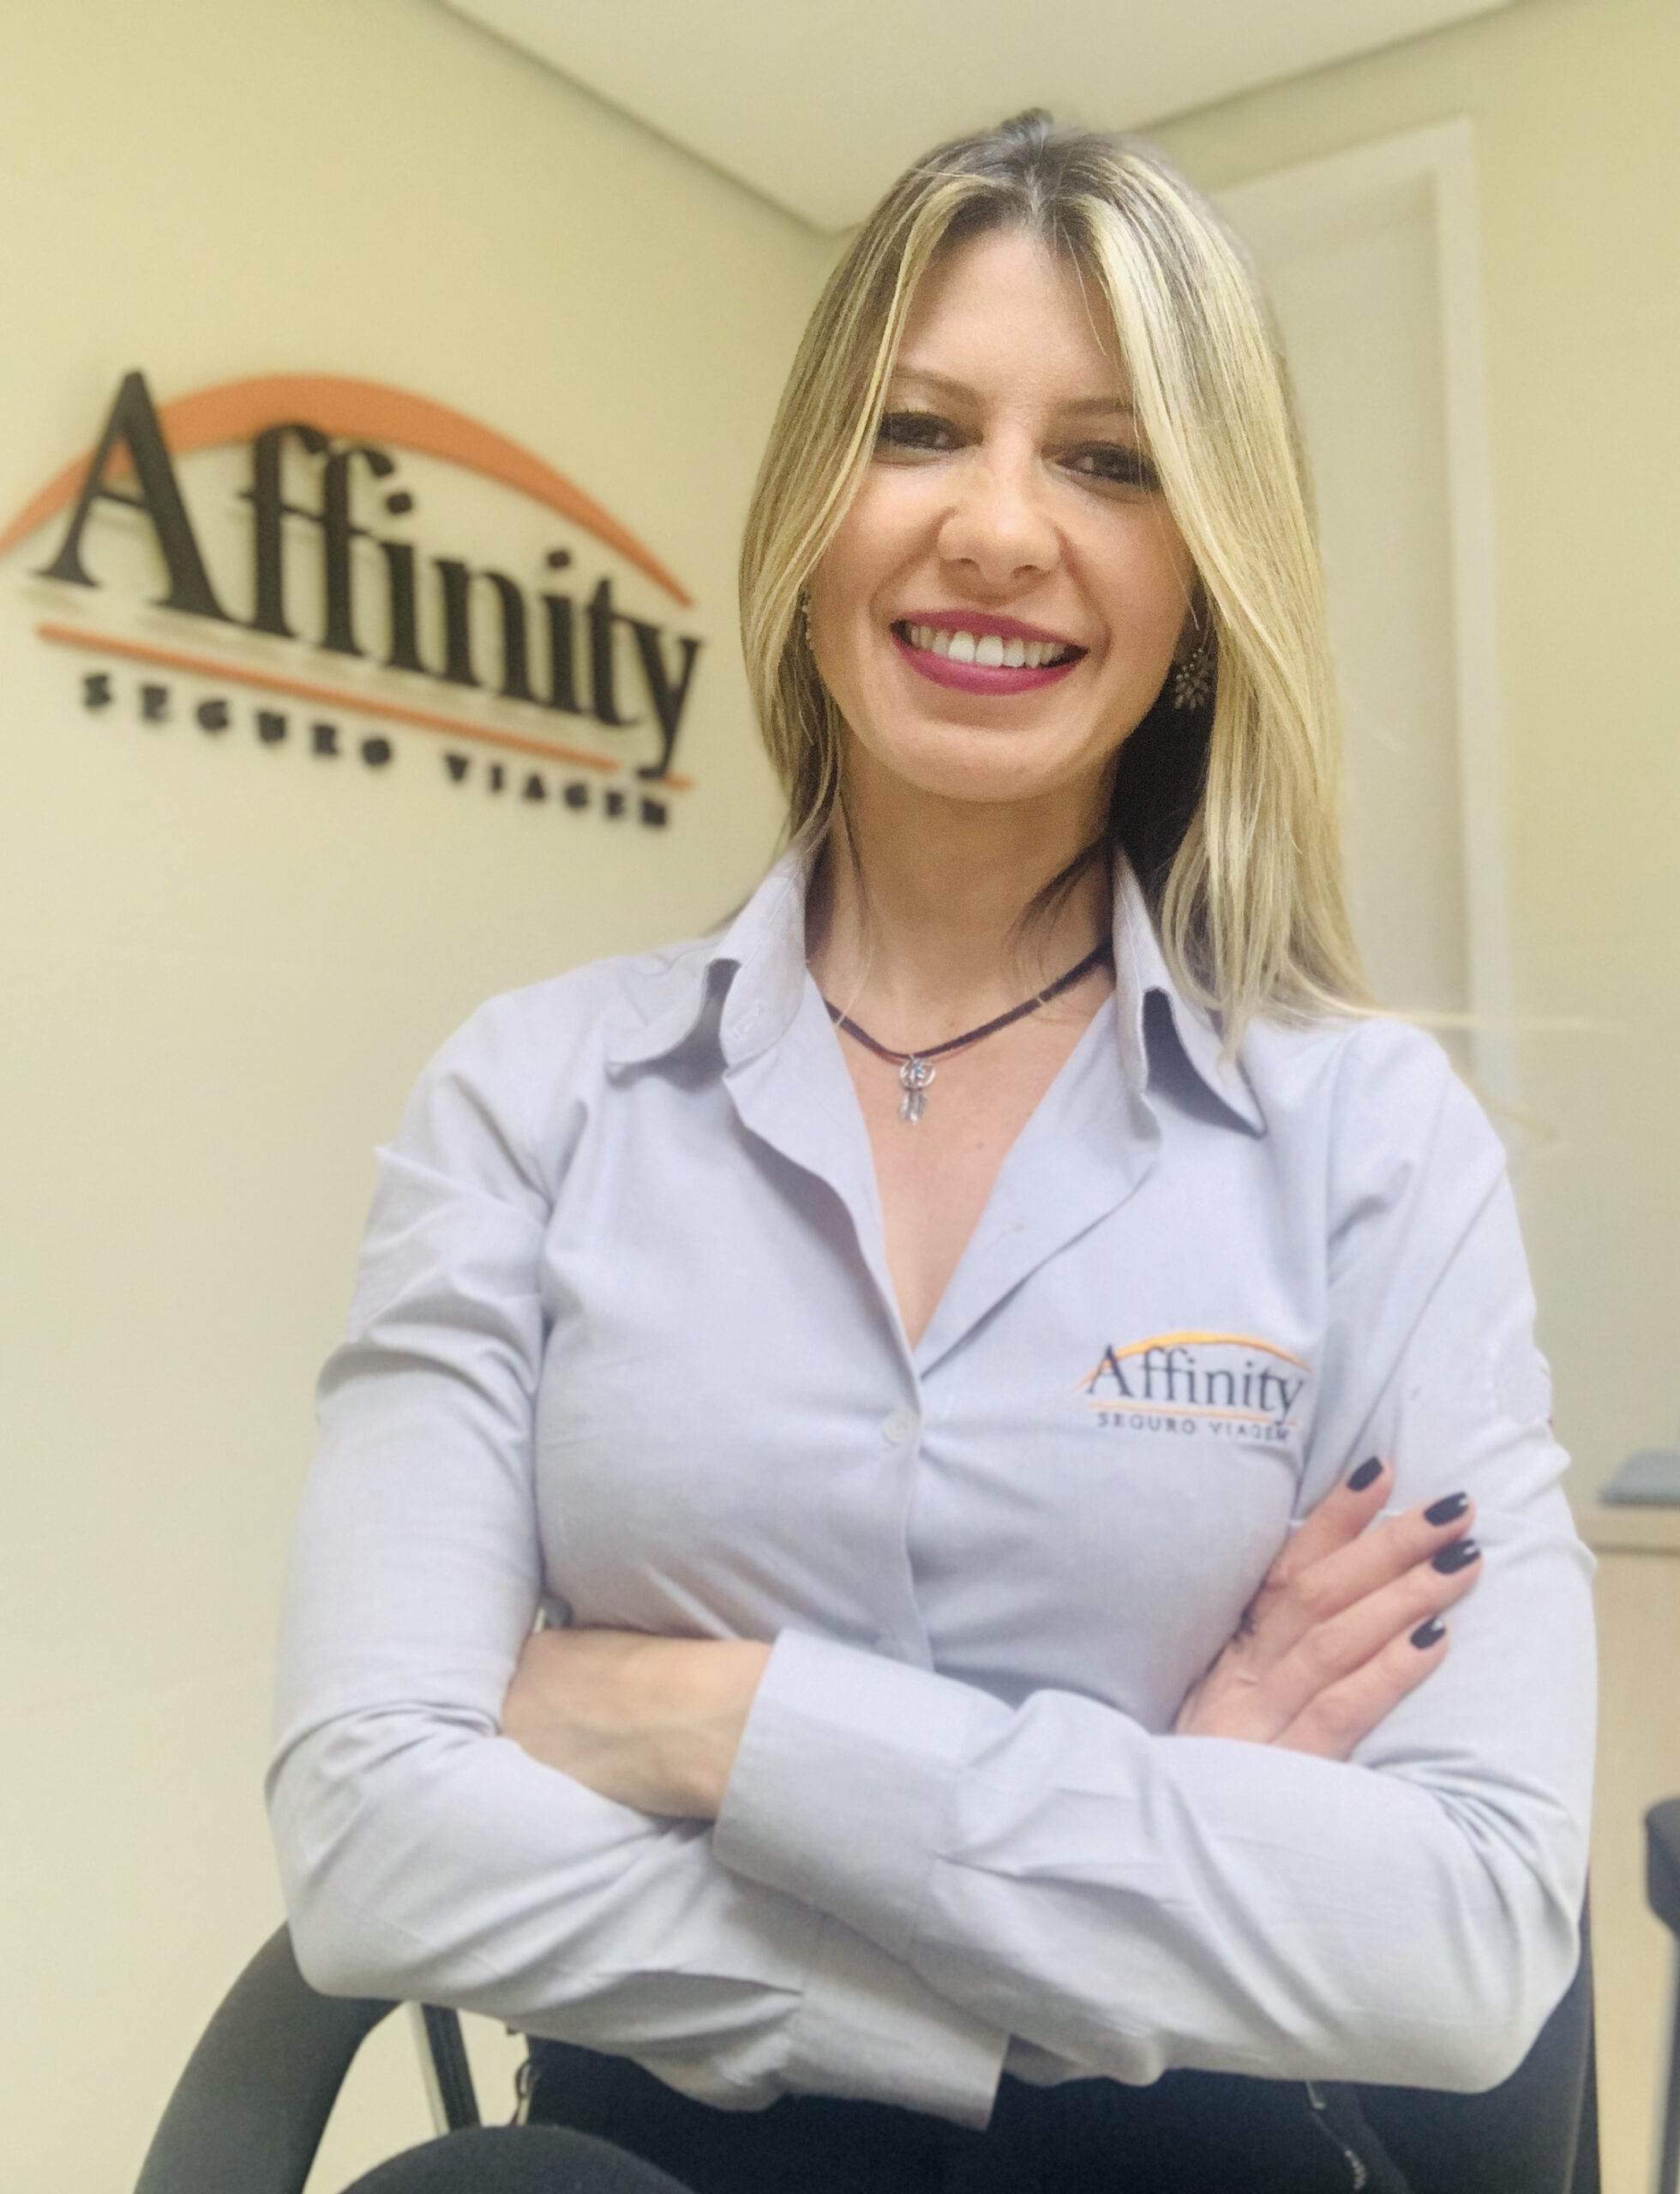 Affinity lança promoção relâmpago com cobertura de DMH em dobro